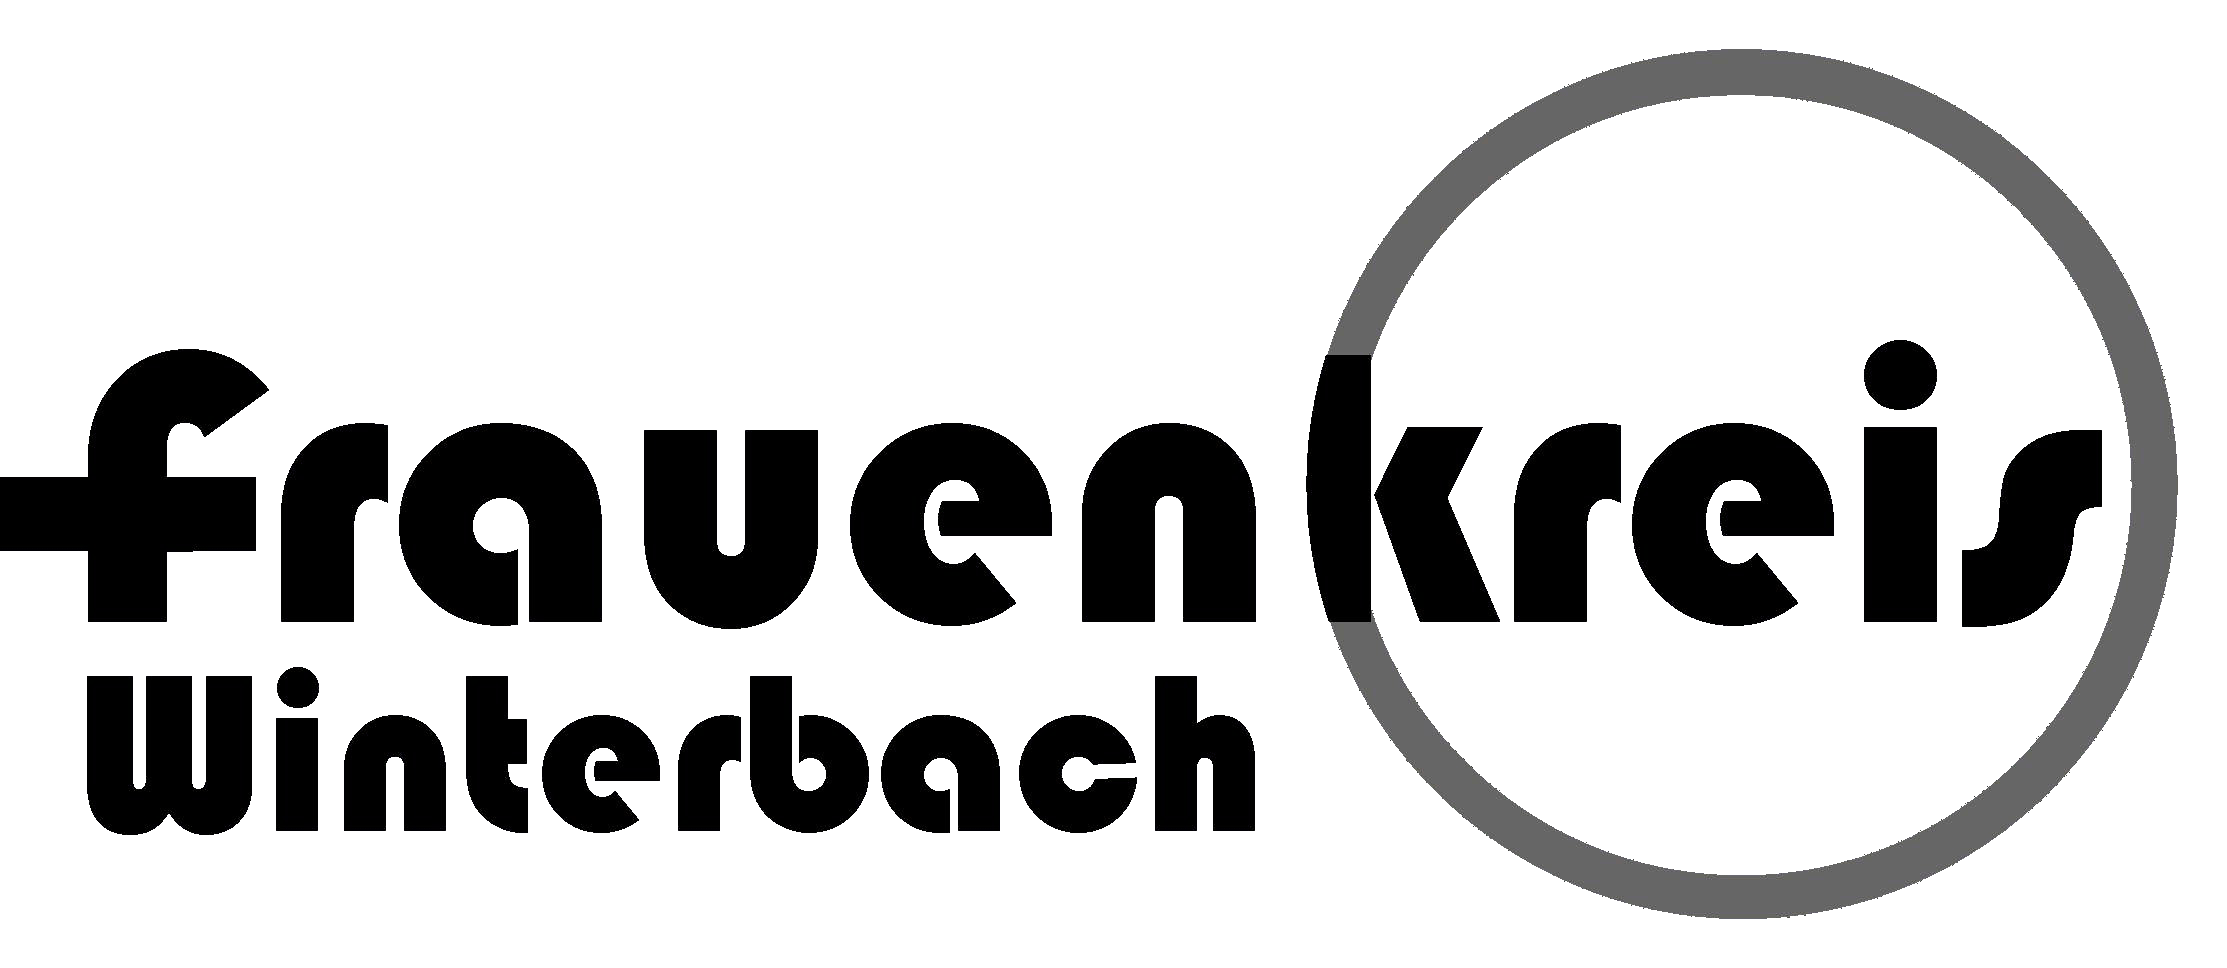 Logo Frauenkreis